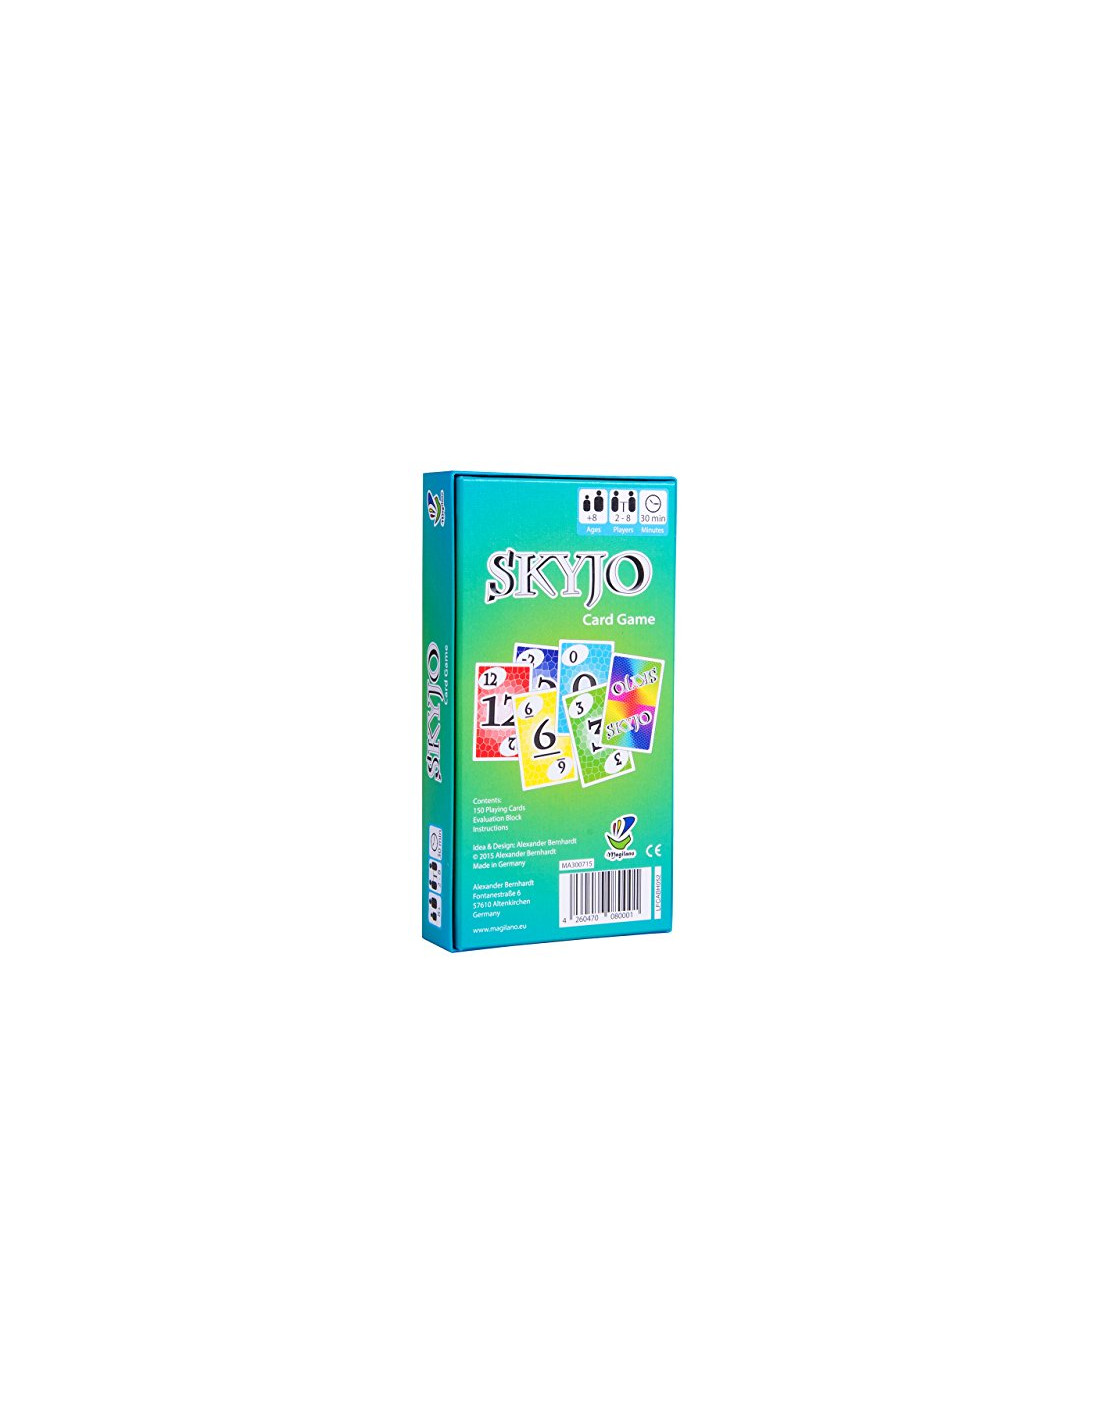 Skyjo - Multi-linguistique